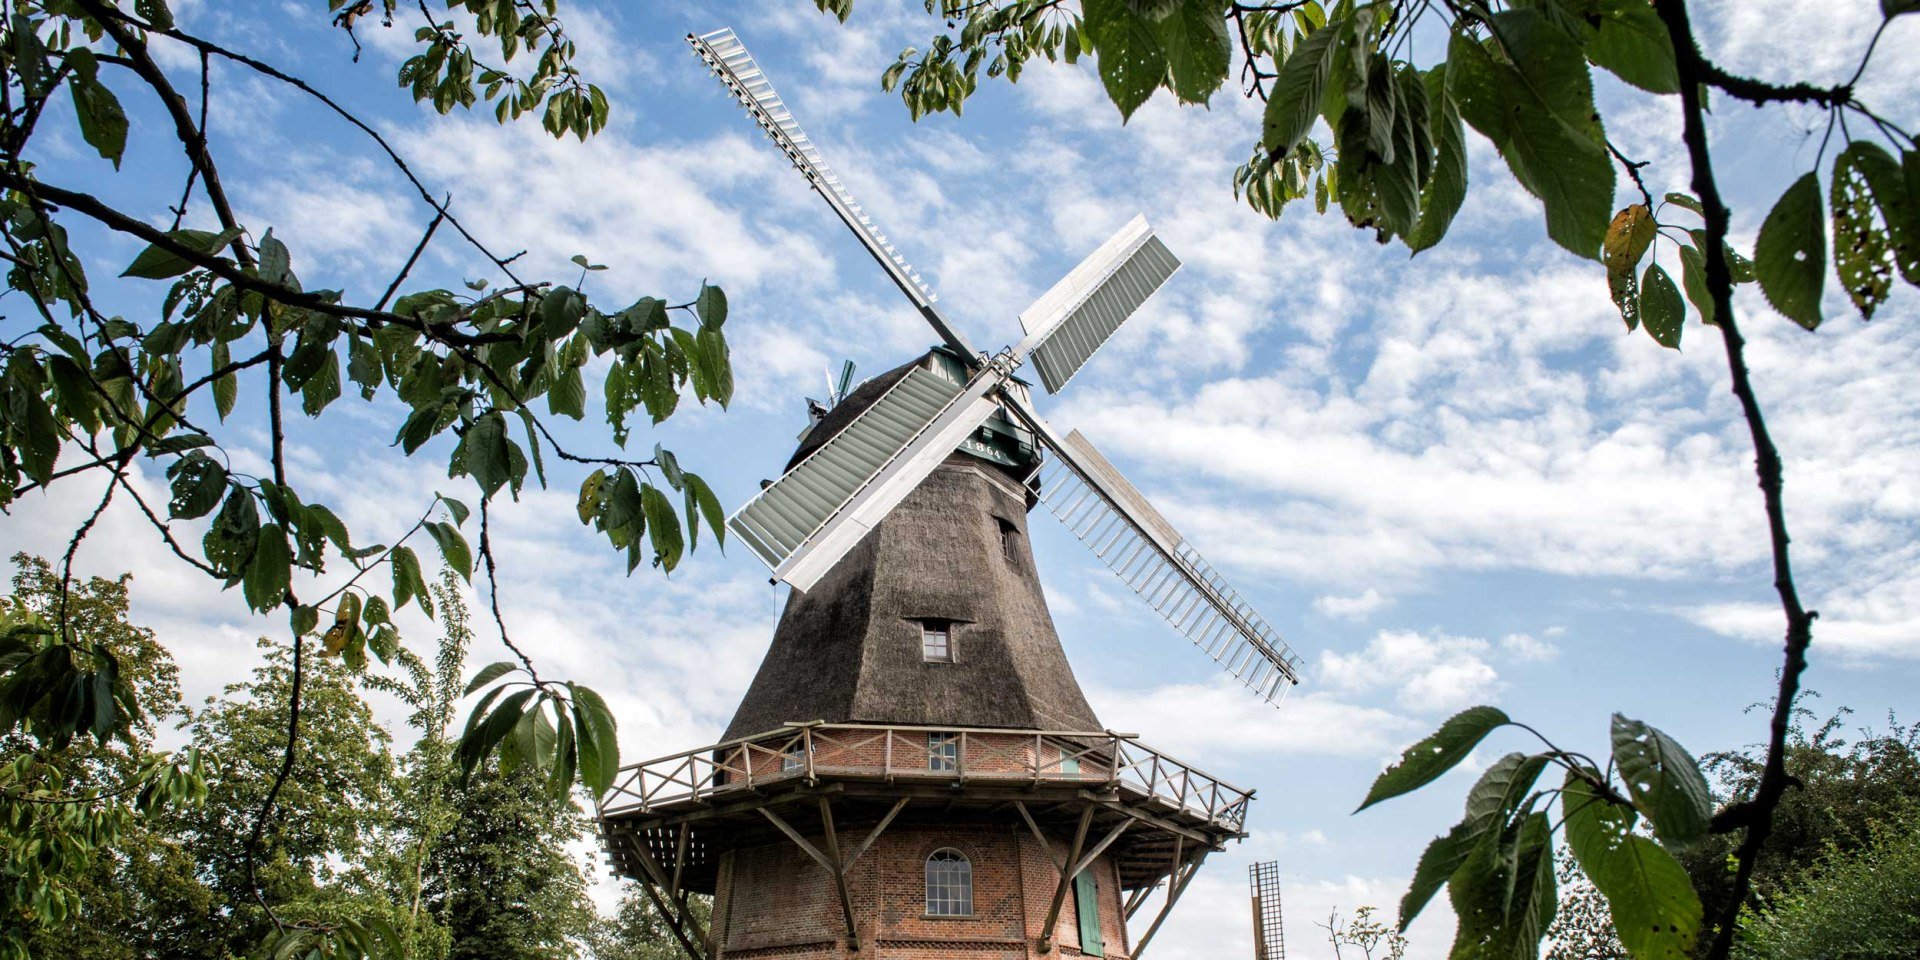 Windmühle Schiffdorf, © Cuxland-Tourismus / Nele Martensen